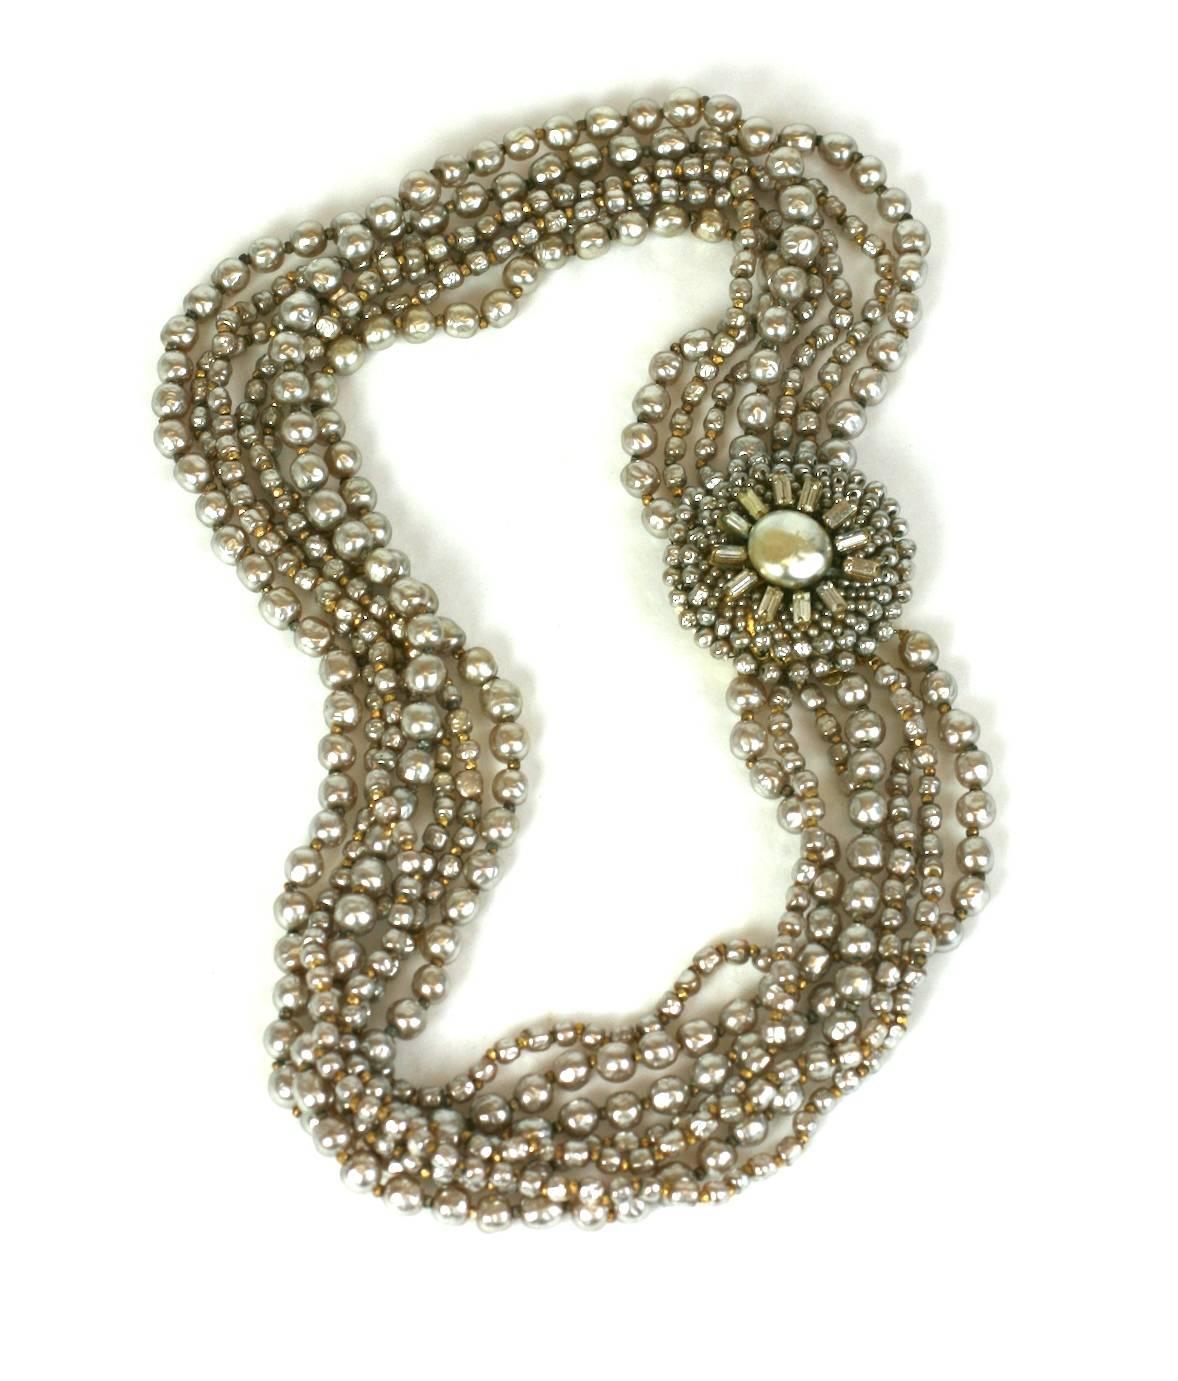 Magnifique collier de fausses perles de Miriam Haskell, composé de plusieurs rangs de fausses perles de couleur crème, d'une baguette pavée brodée et d'un fermoir en fausses perles de rocaille. Les perles vintage de Miriam Haskell ont une